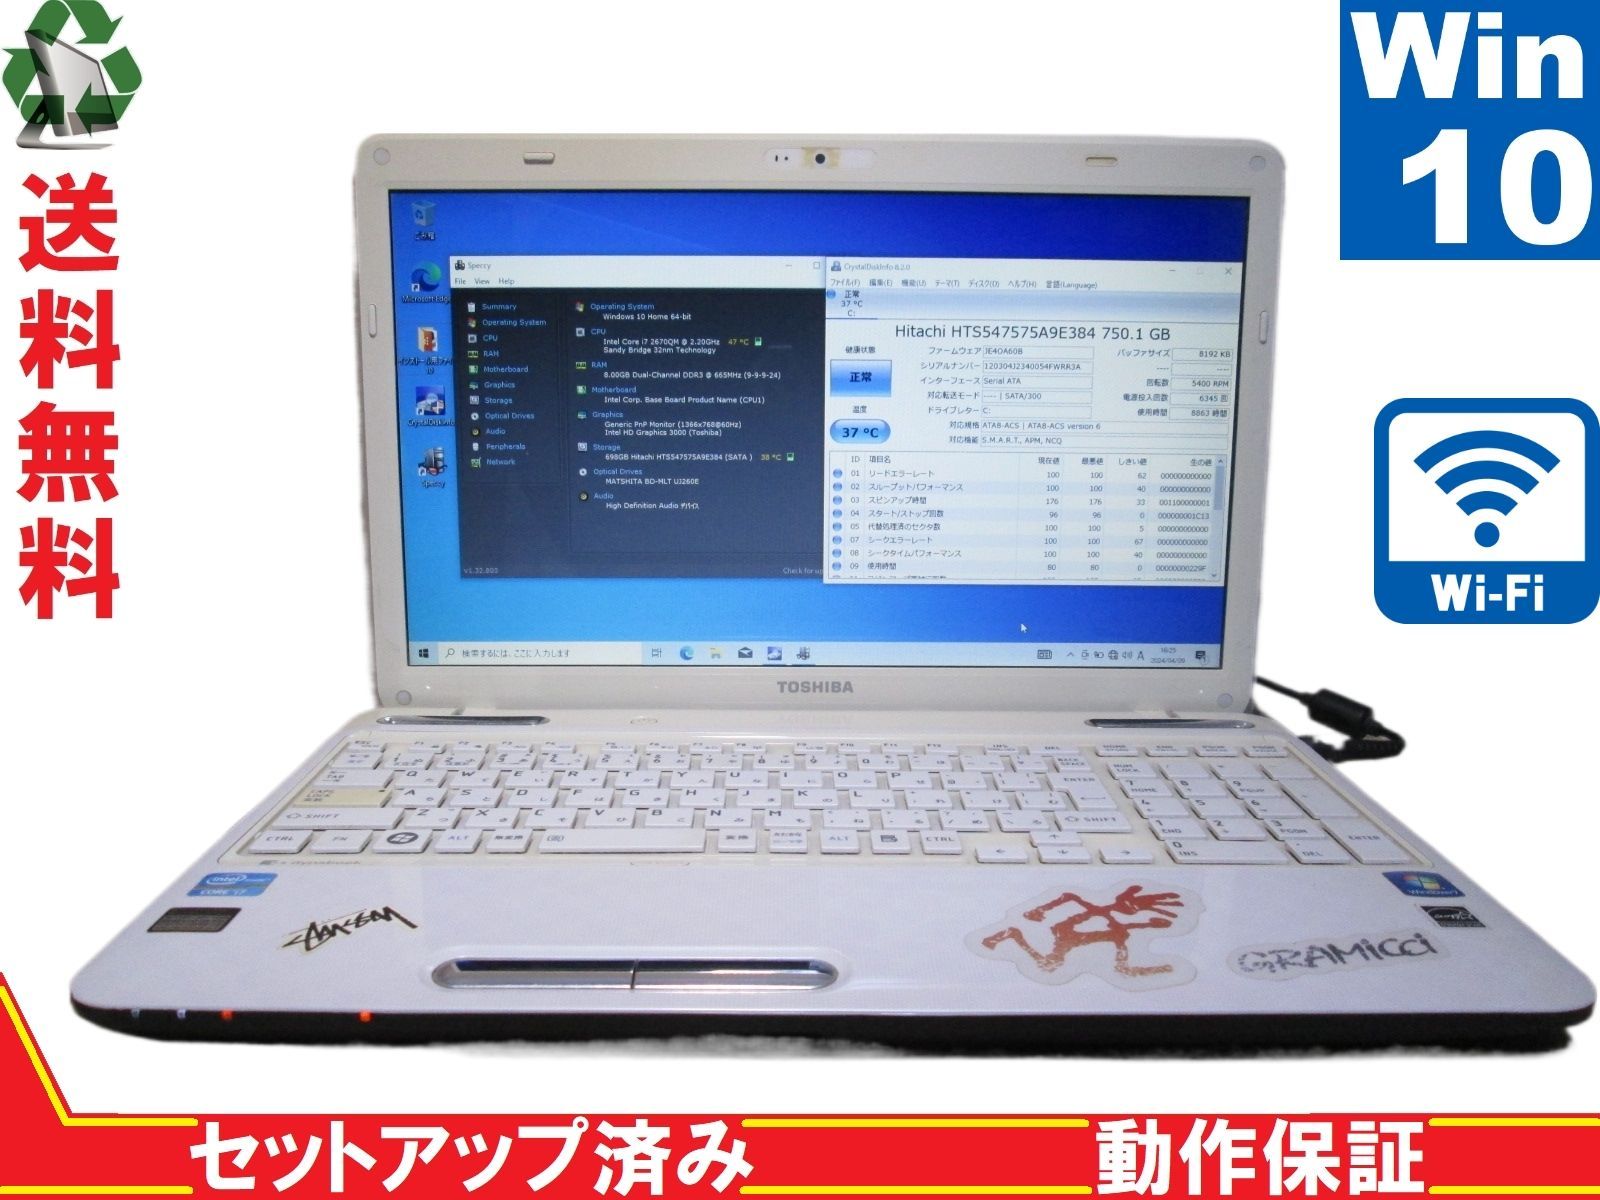 東芝 dynabook T451/58EW【Core i7 2670QM】 【Win10 Home】 ブルーレイ 長期保証 [88898] - メルカリ